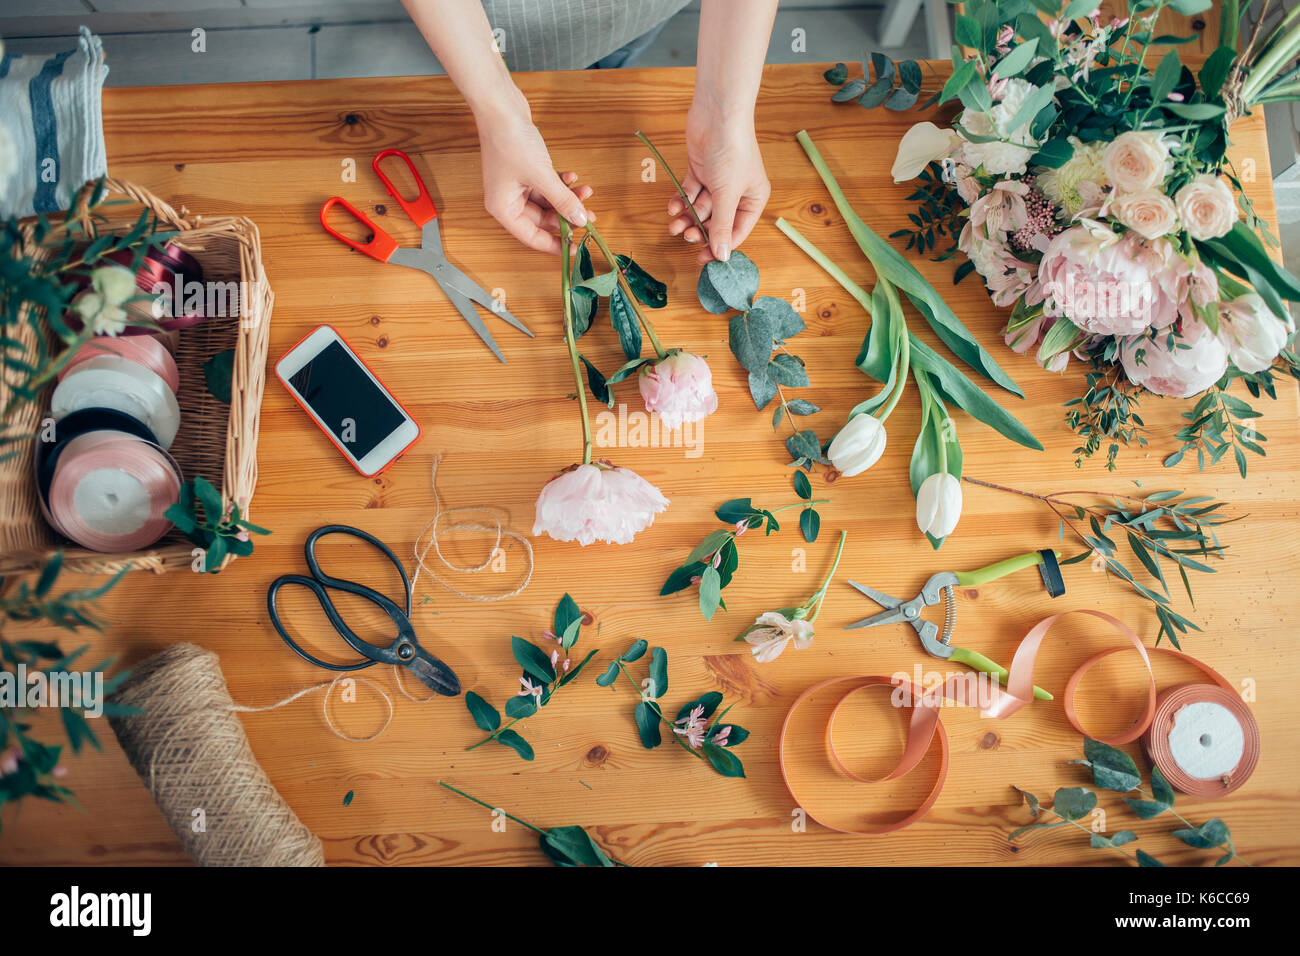 Mains d'un fleuriste contre desktop avec des outils de travail et rubans sur fond de bois Banque D'Images